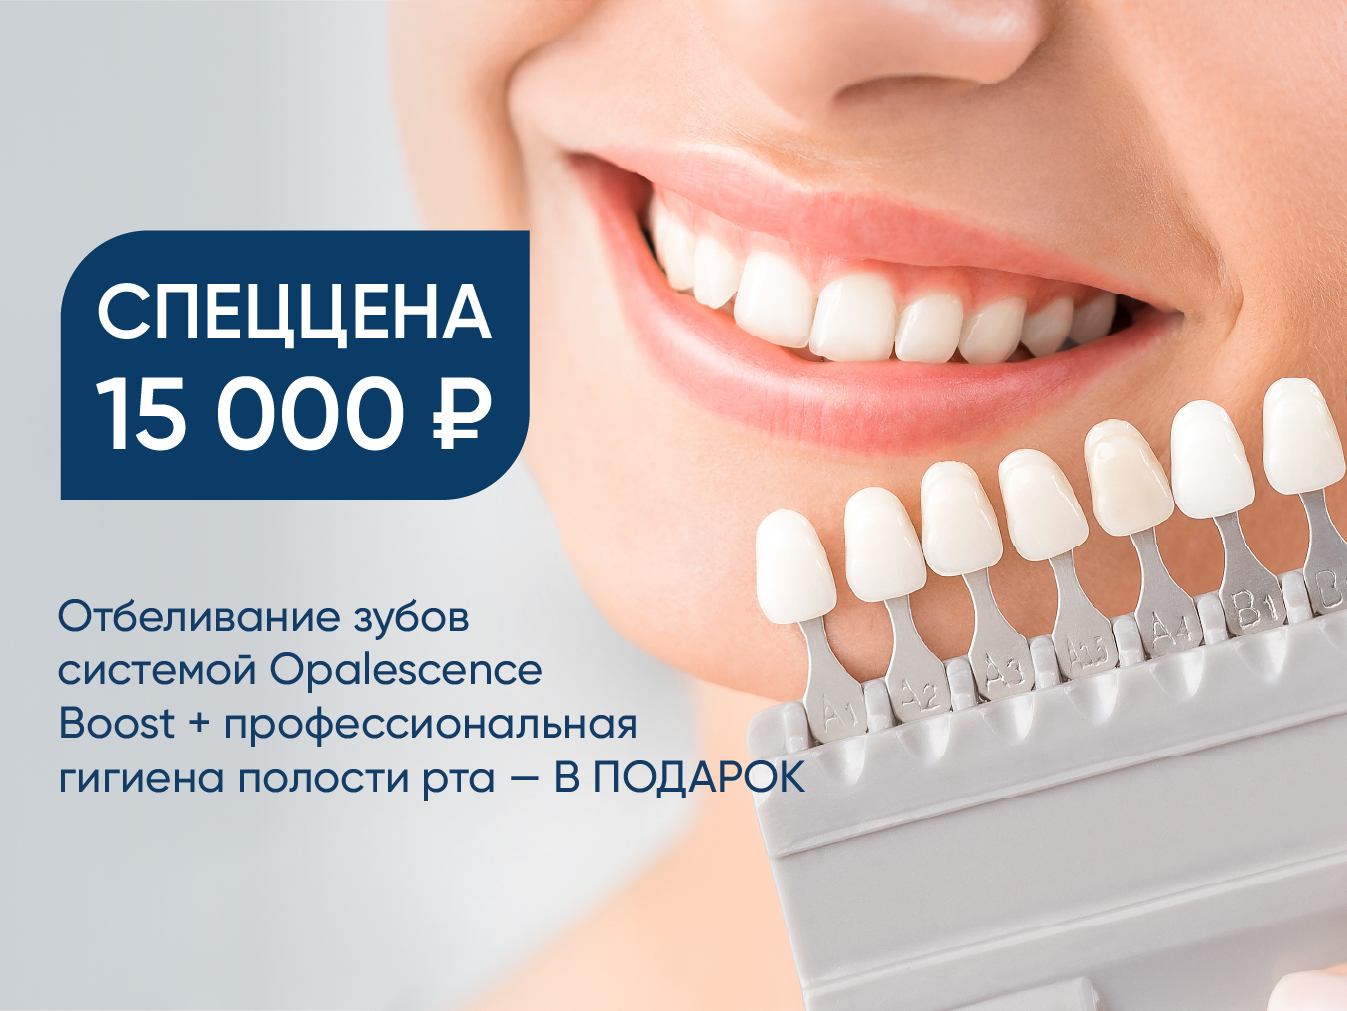 Спеццена 15 000 руб. на отбеливание зубов системой Opalescence Boost+ профессиональная гигиена полости рта – В ПОДАРОК